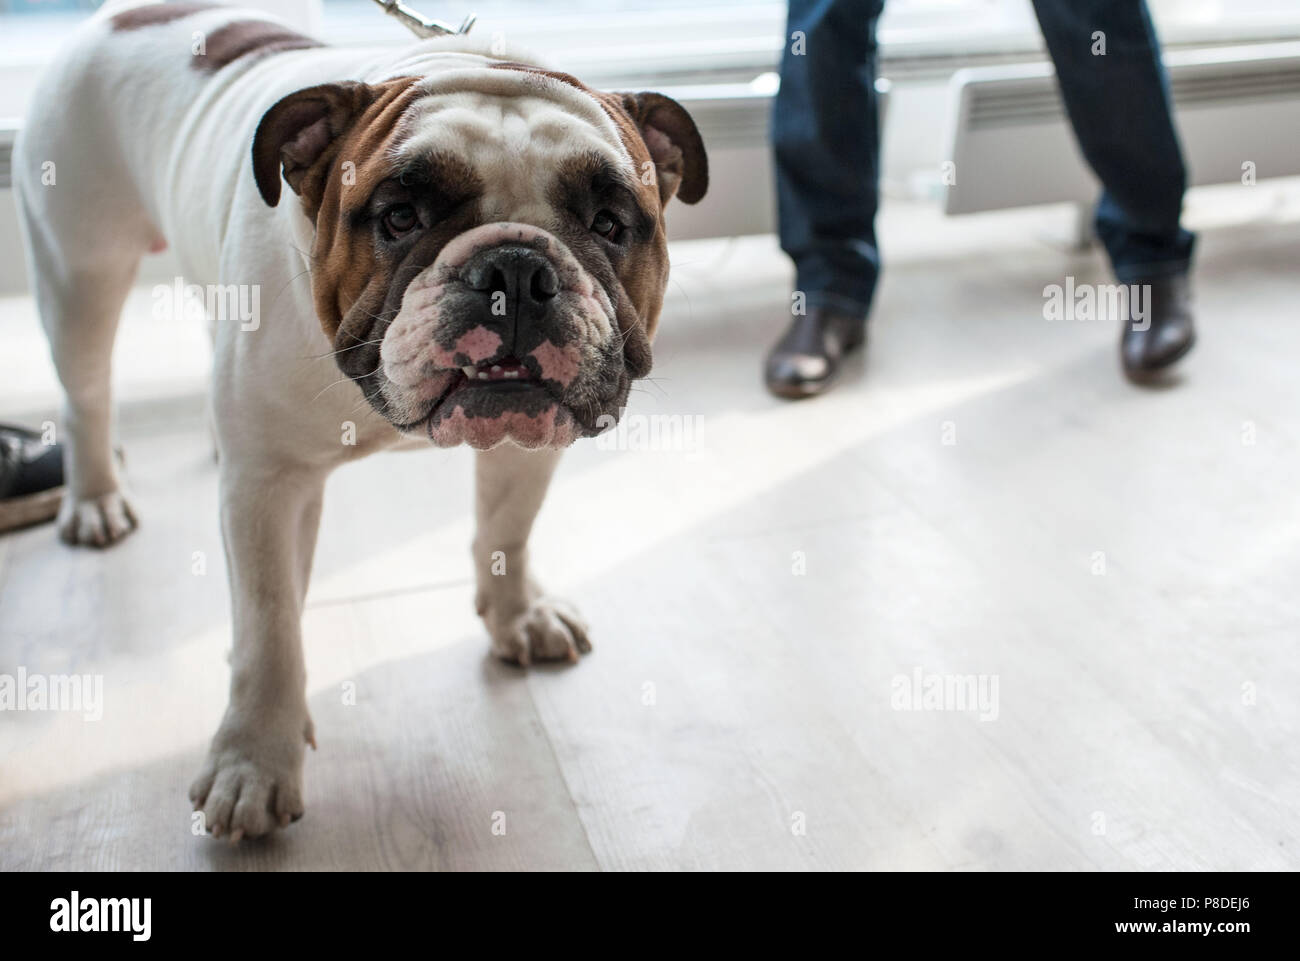 English Bulldog at dog show, Moscow. Stock Photo